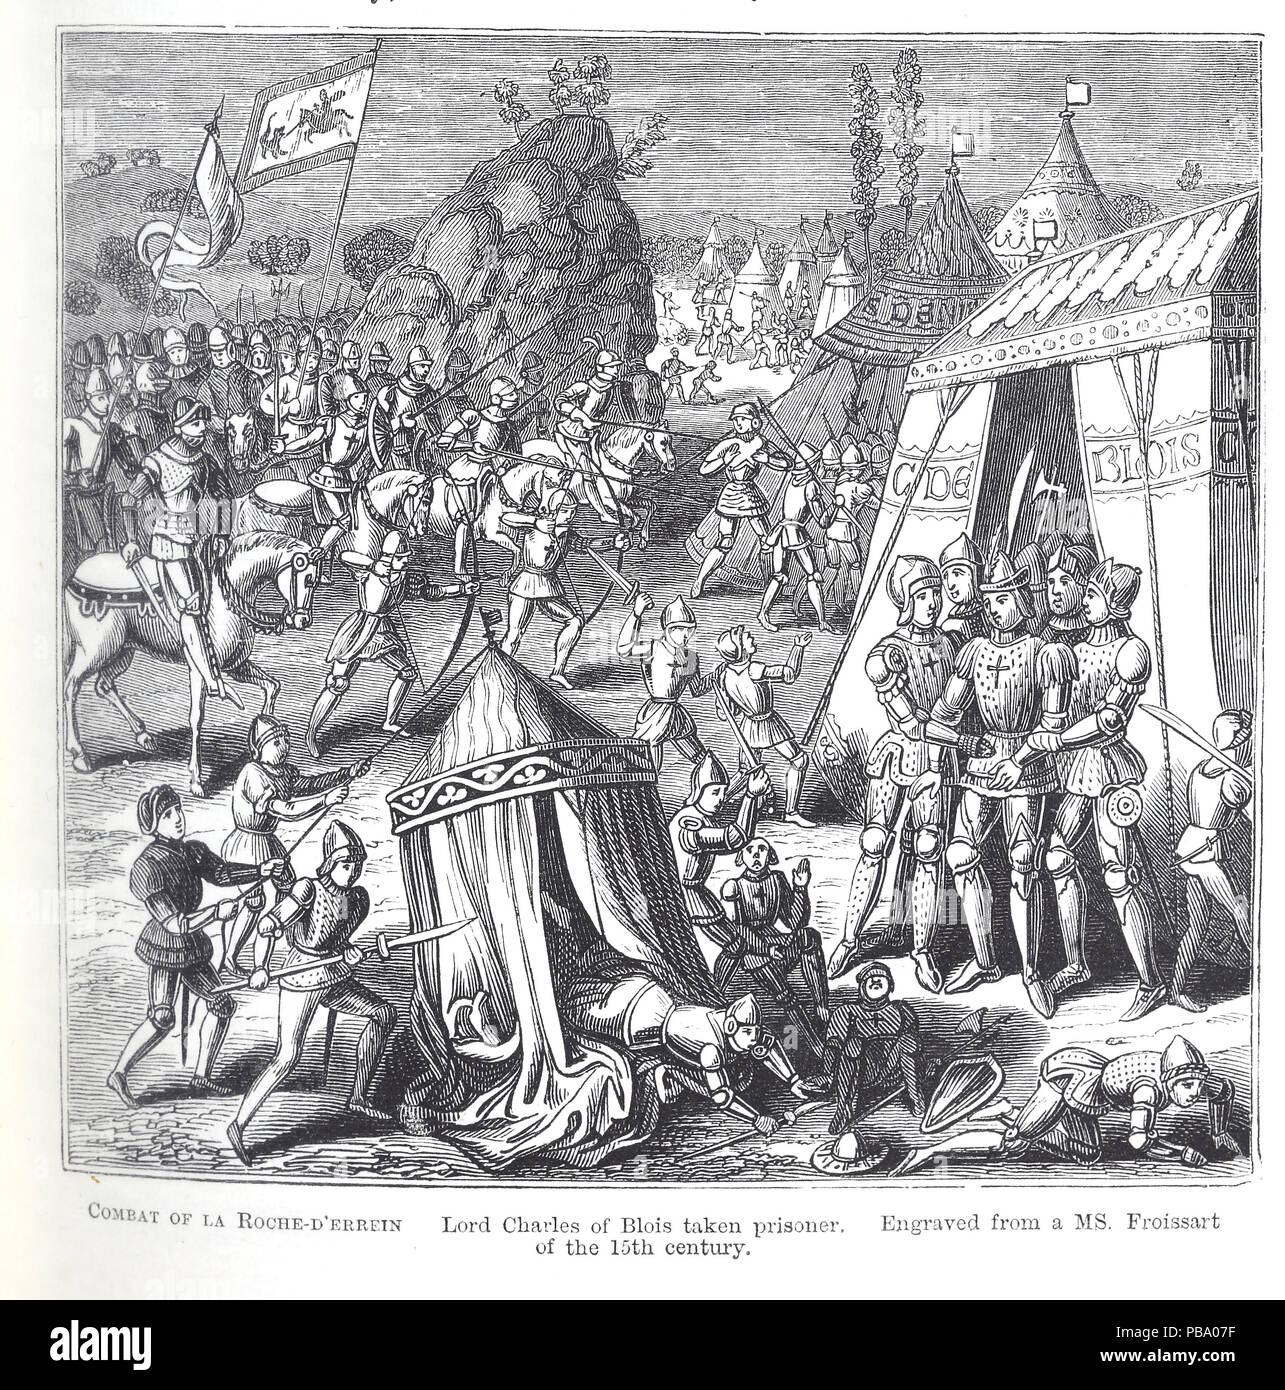 Illustrazione dal titolo "Lotta di La Roche-D'Errein, Lord Charles di Blois preso prigioniero, inciso da una MS. Froissart del xv secolo" Foto Stock